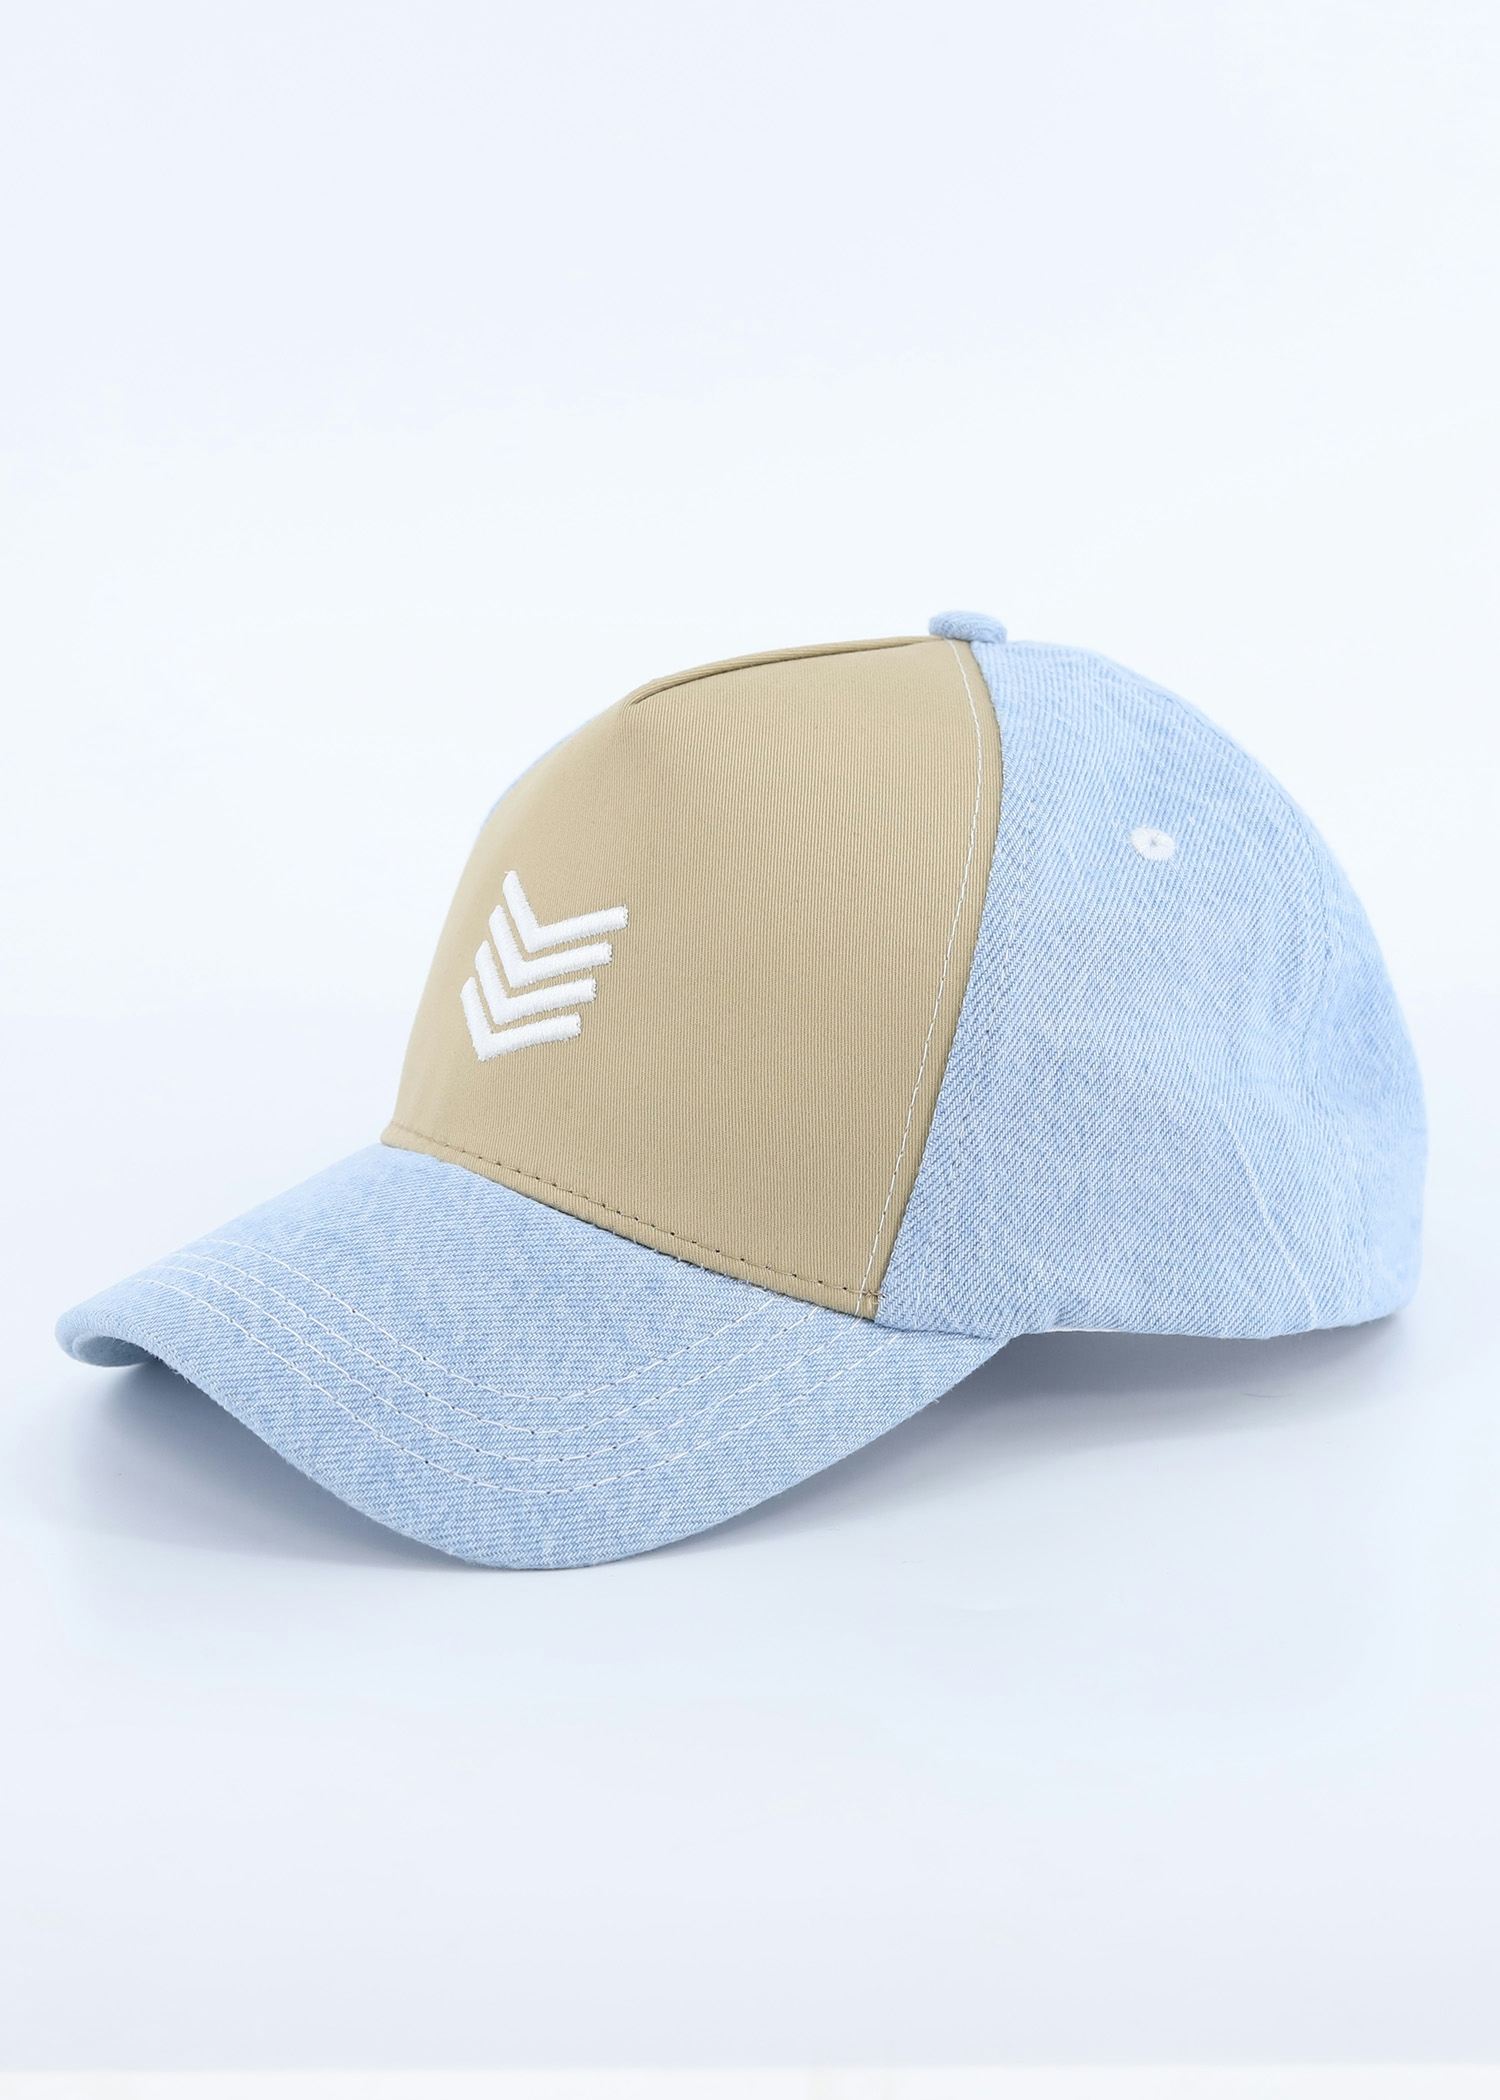 rooster visor cap lt blue color option